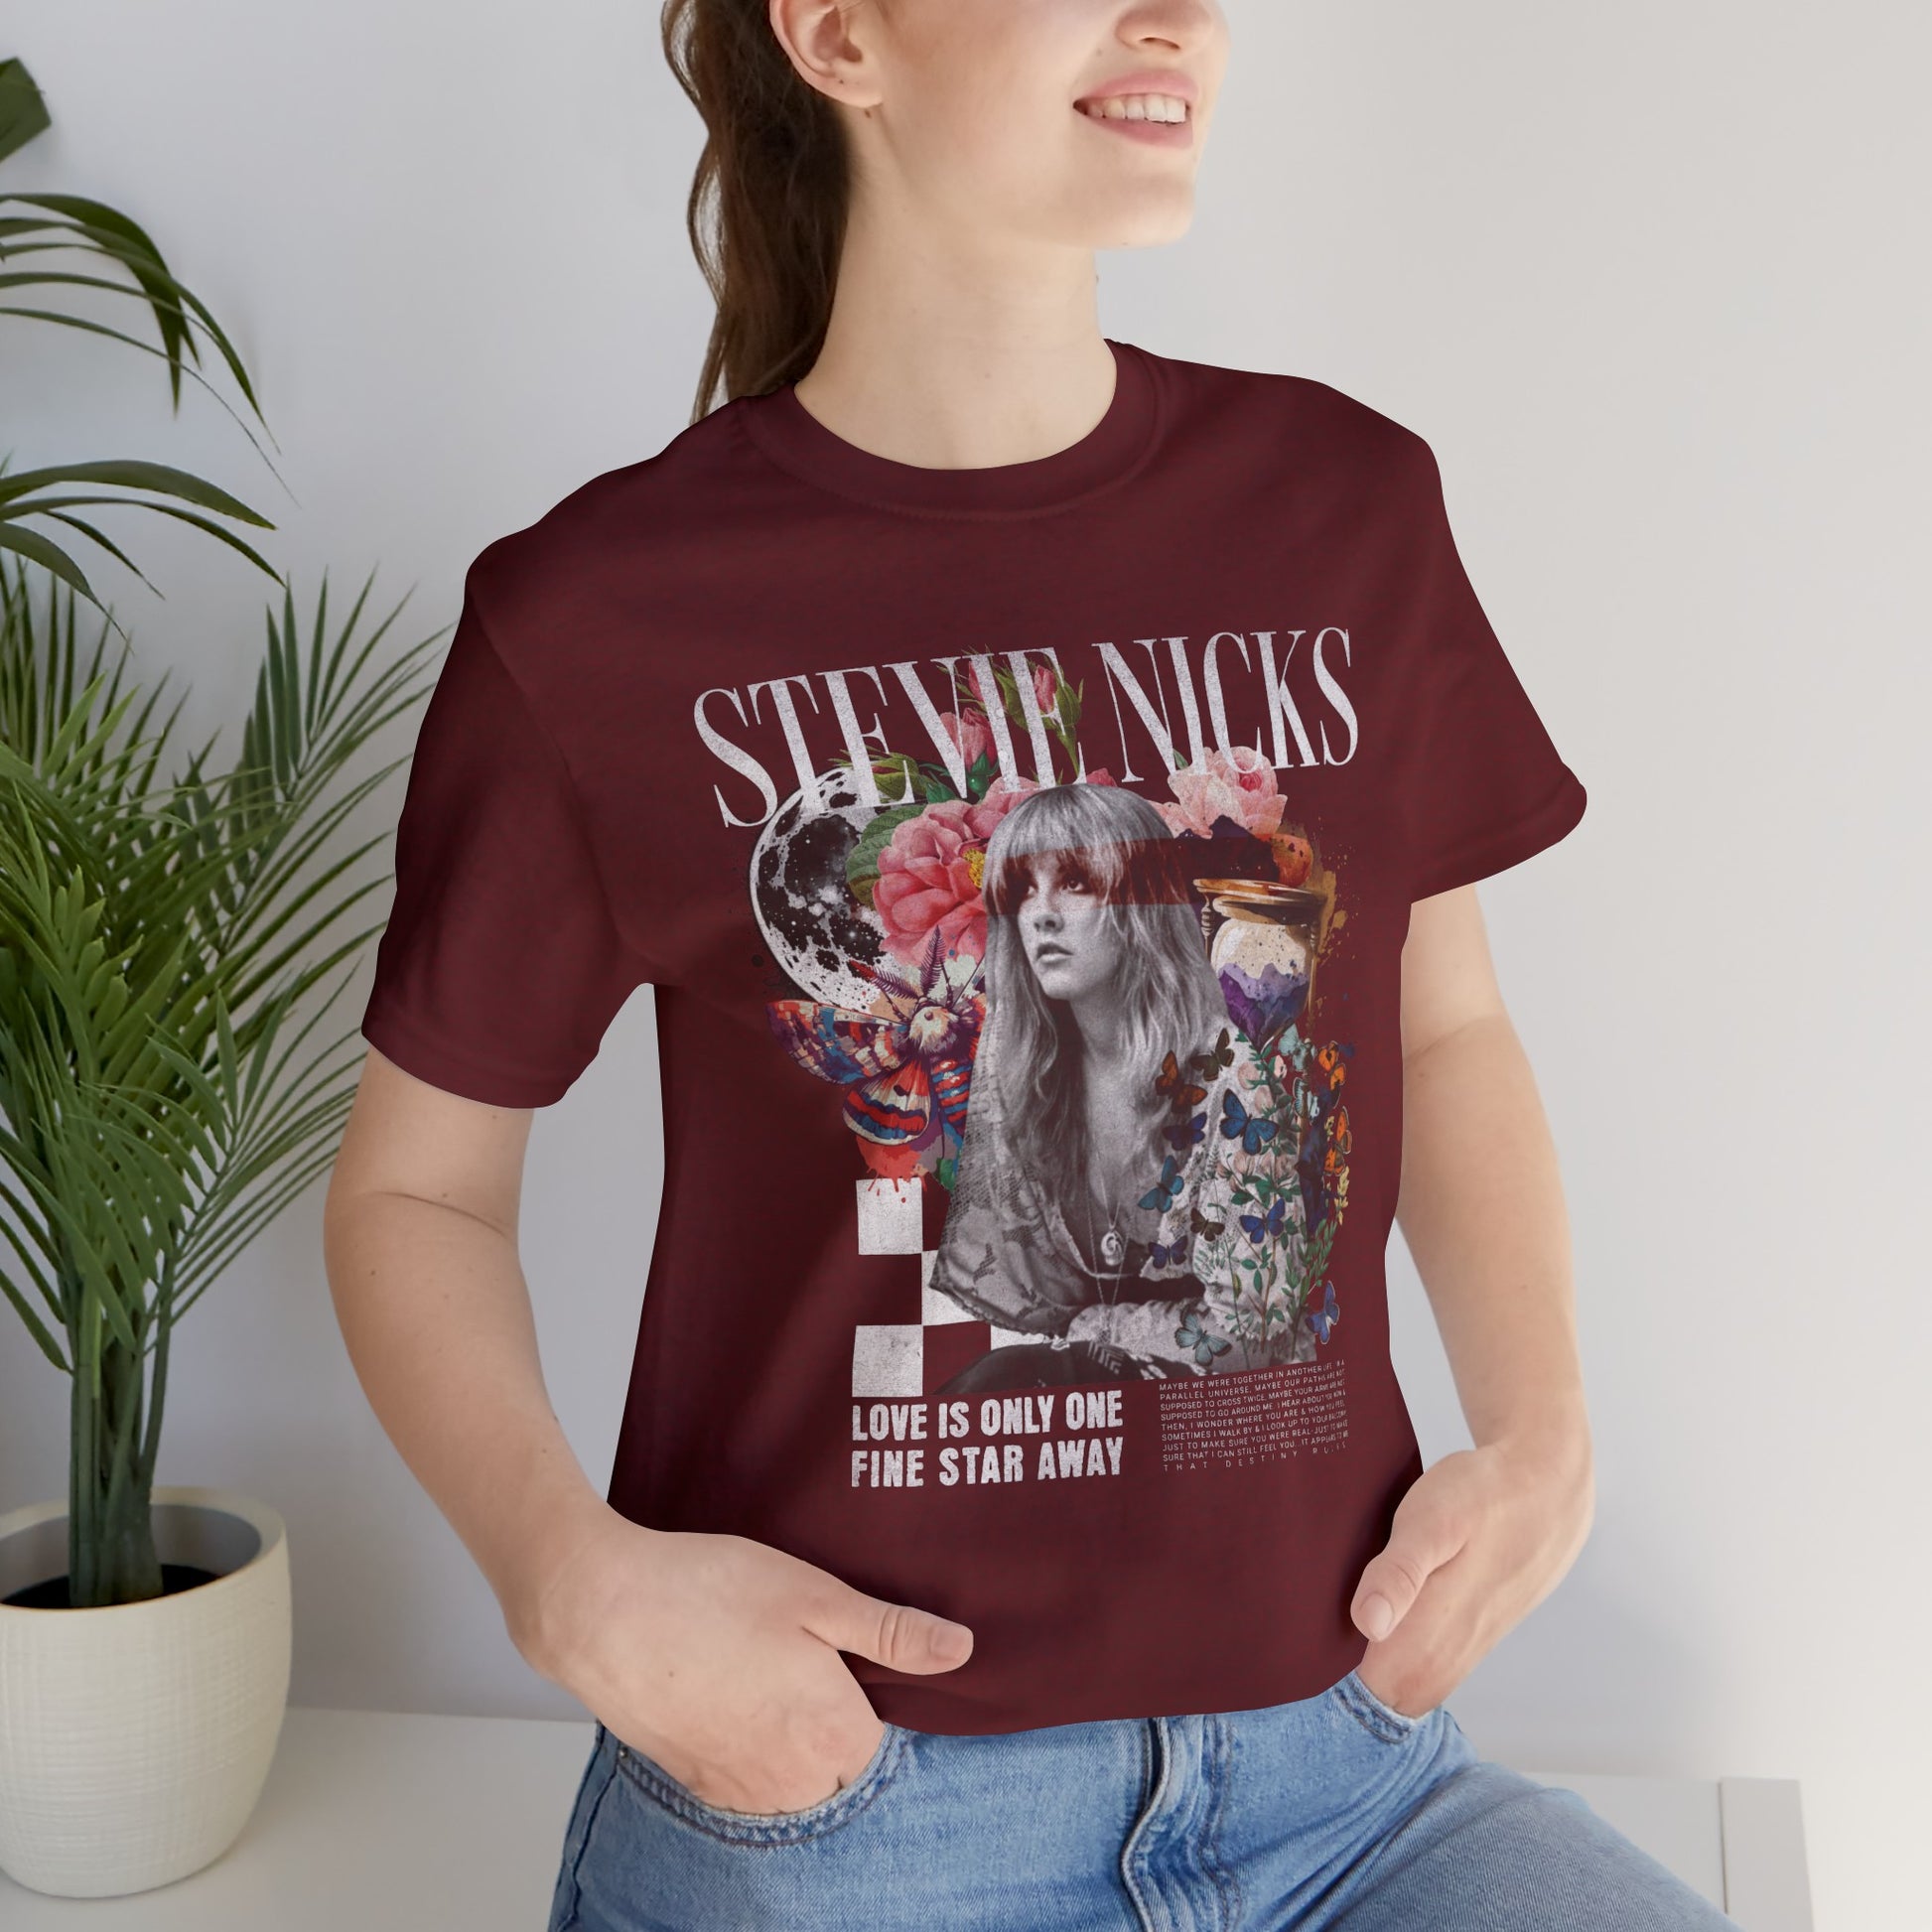 Stevie Nicks Unisex Jersey T-Shirt Heather Cardinal